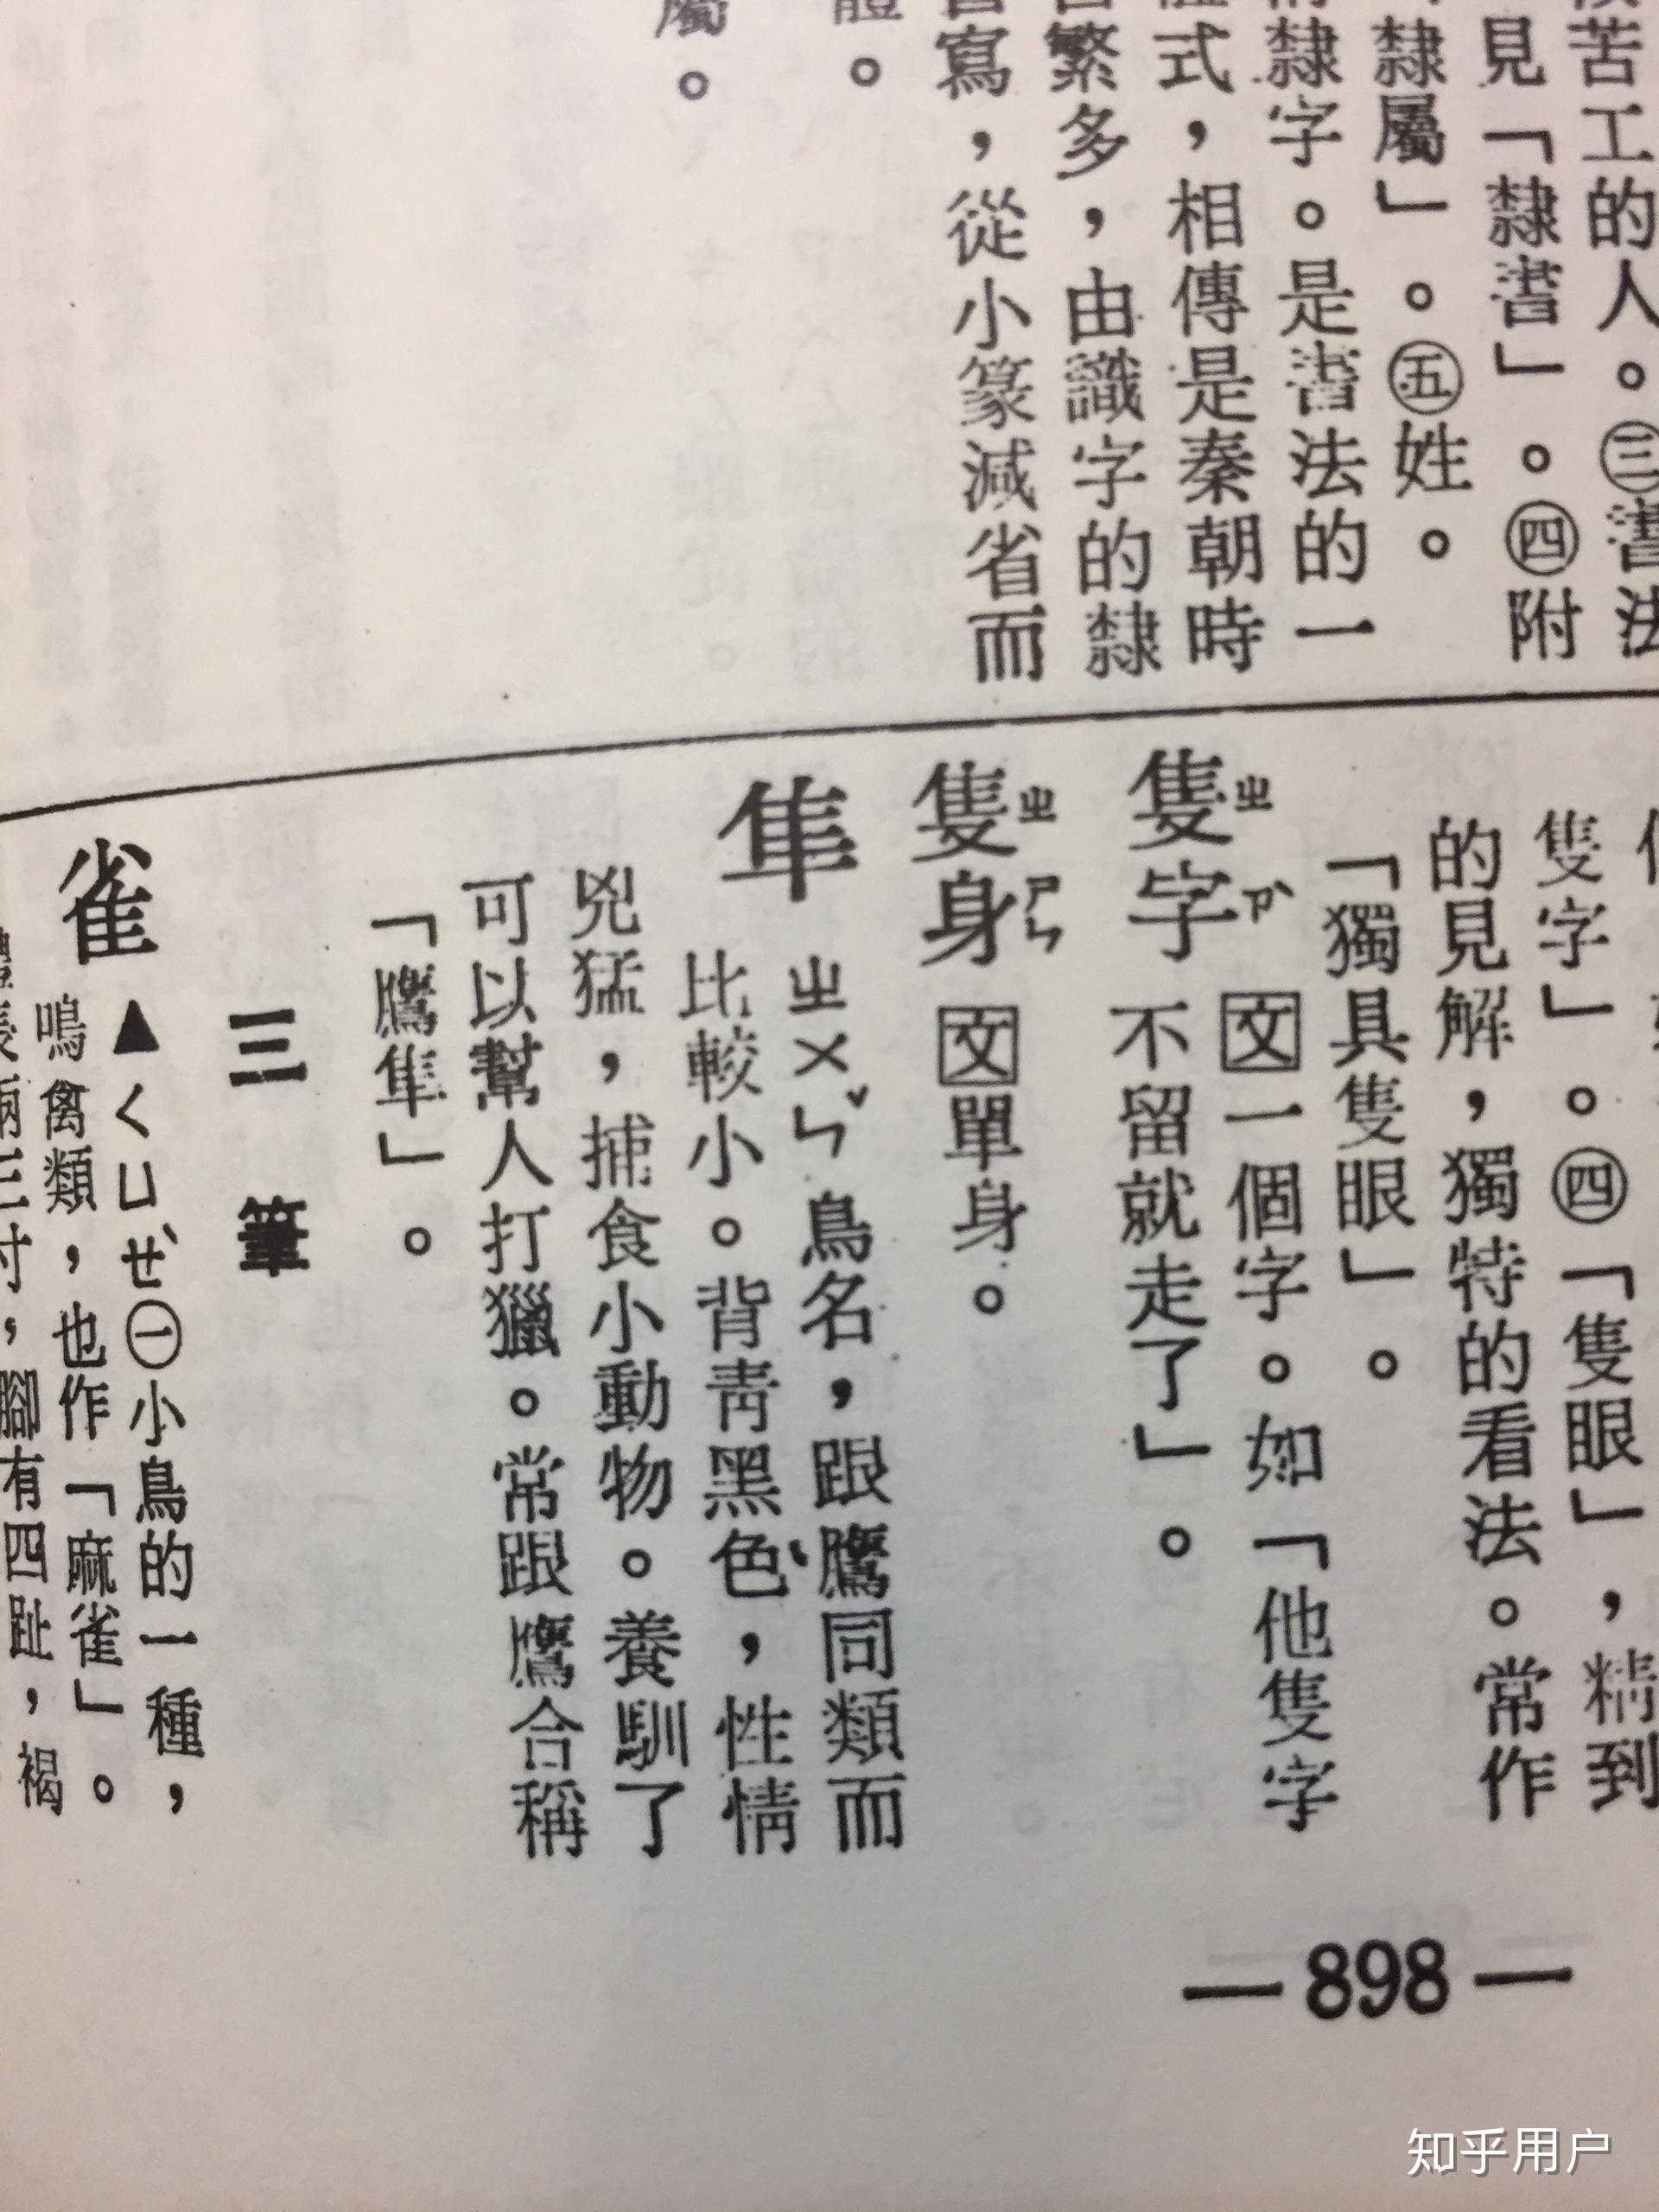 台湾人对汉字的误读,尤其是多音字、或由